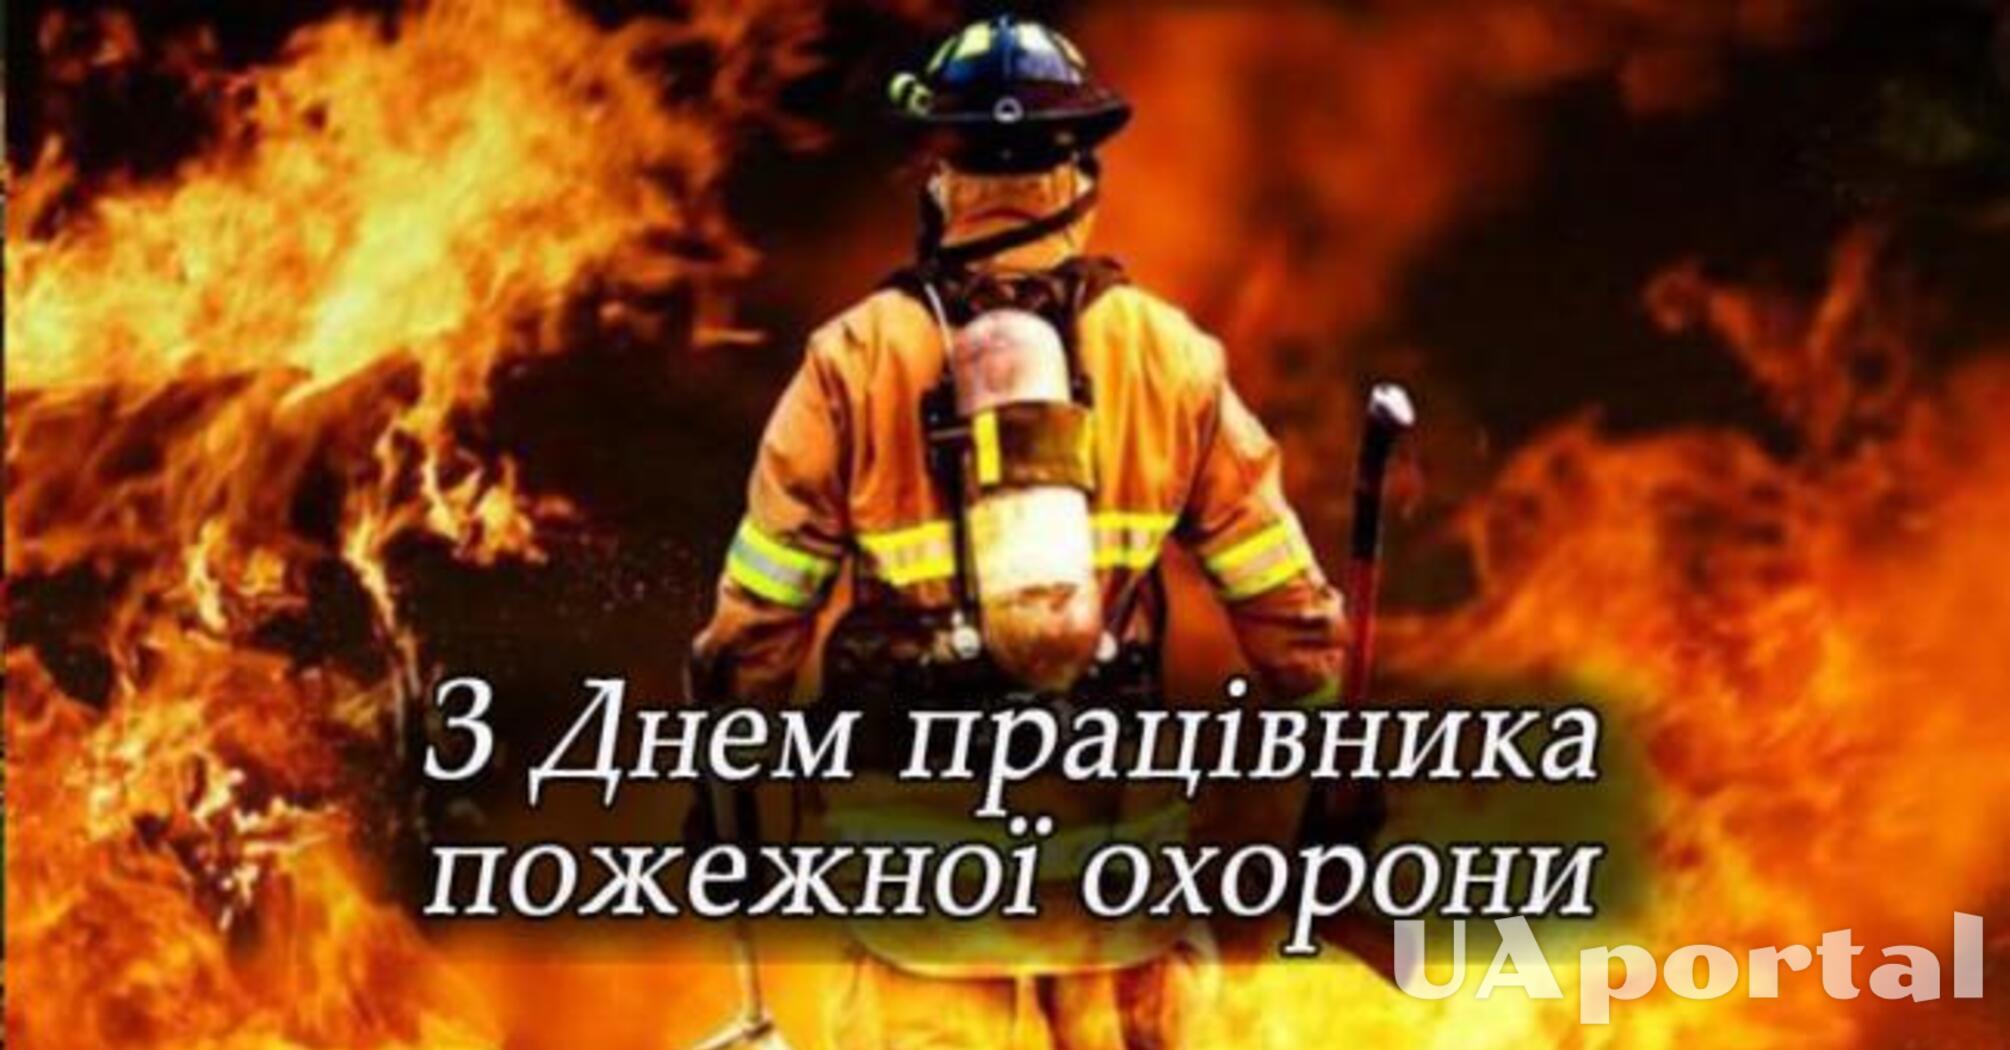 29 января – День пожарника в Украине: лучшие поздравления и картинки для нынешних героев